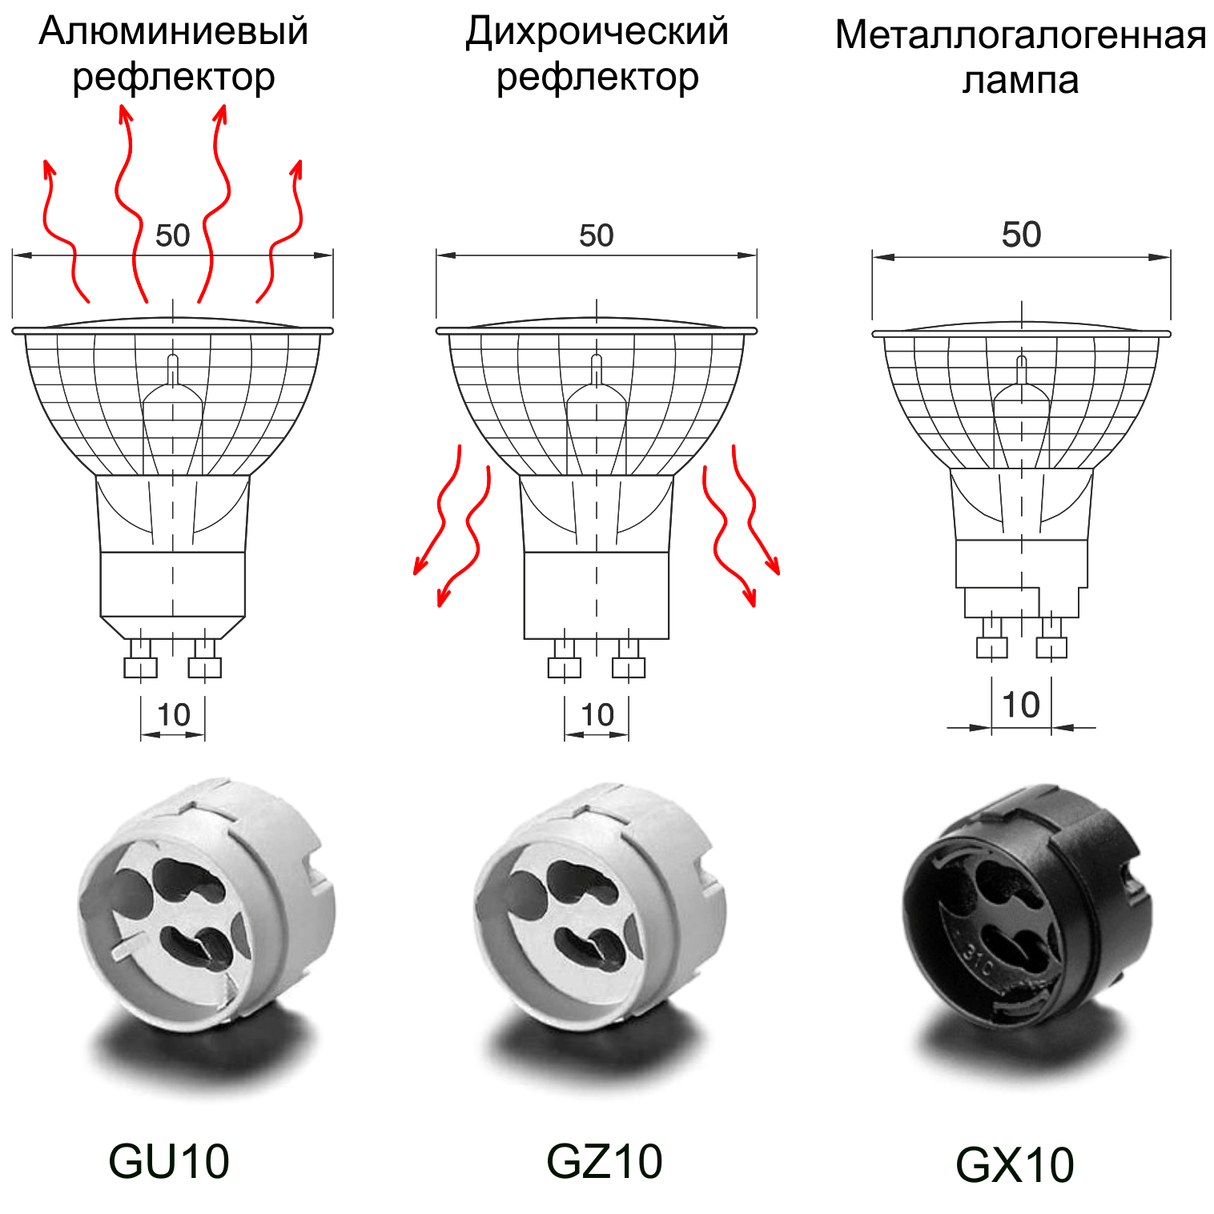 Лампы и патроны GU10, GX10, GZ10